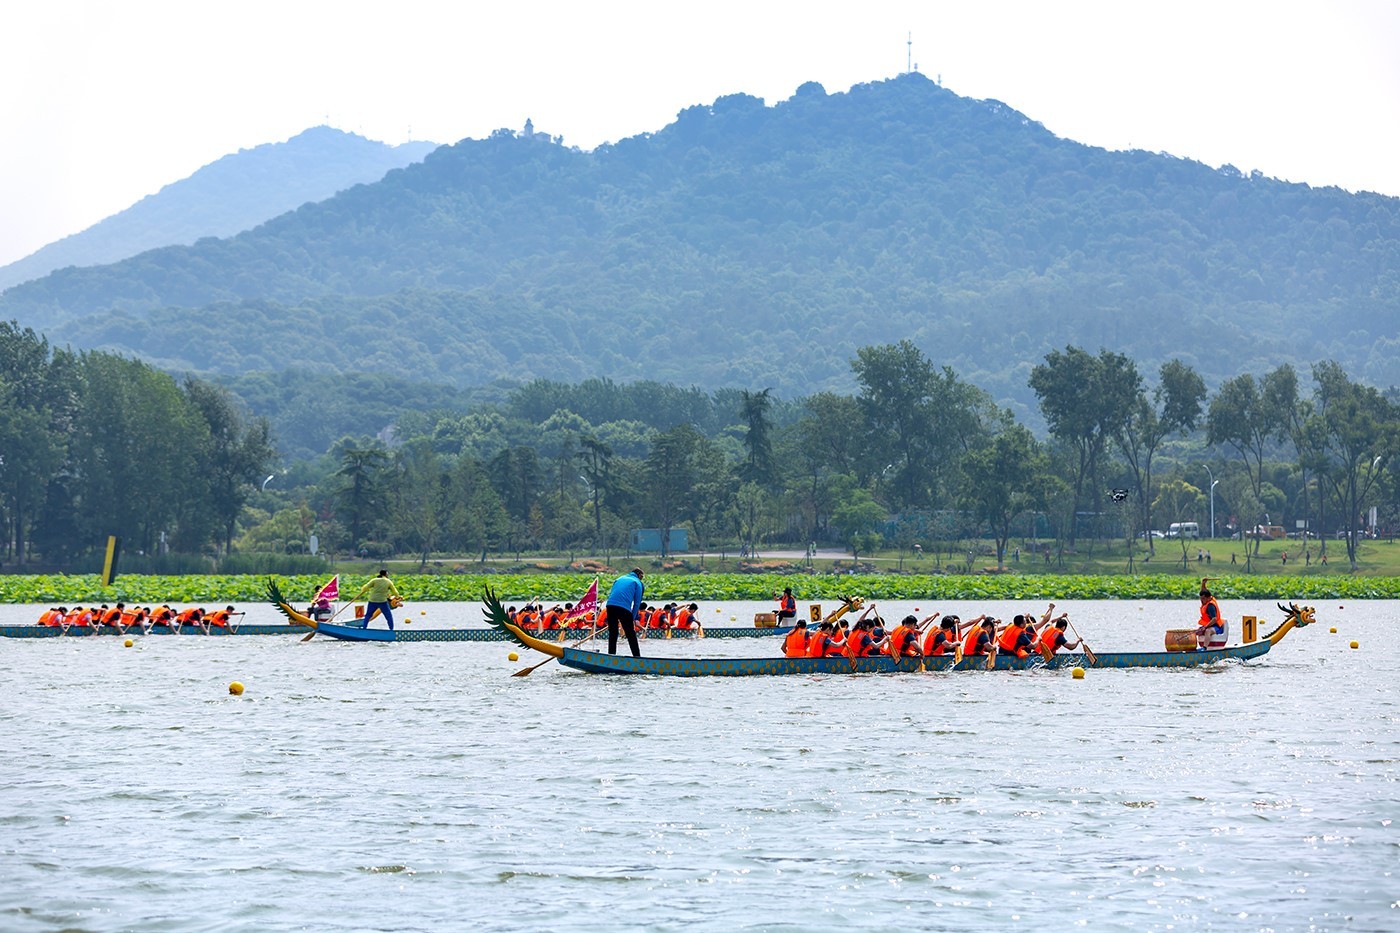 Nanjing Celebrates Annual Dragon Boat Festival on June 22